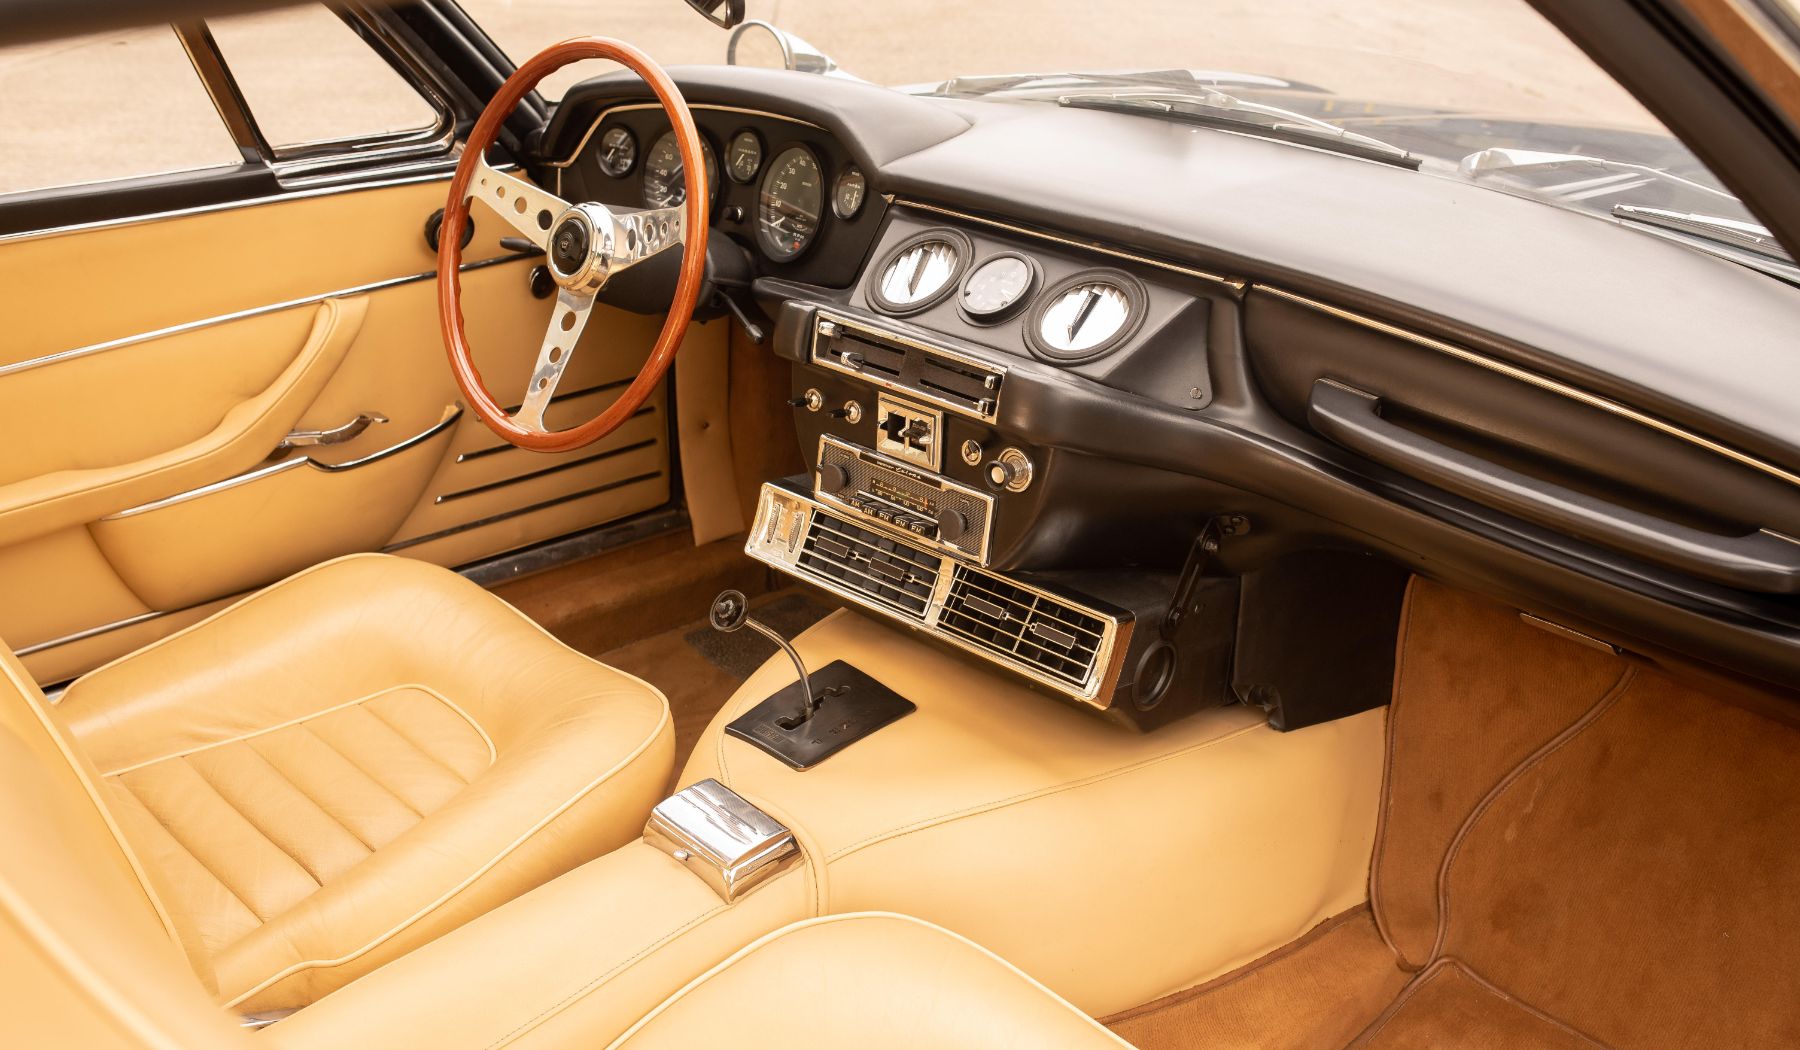 Monteverdi High Speed Overlooked Gem of 1970s GTs